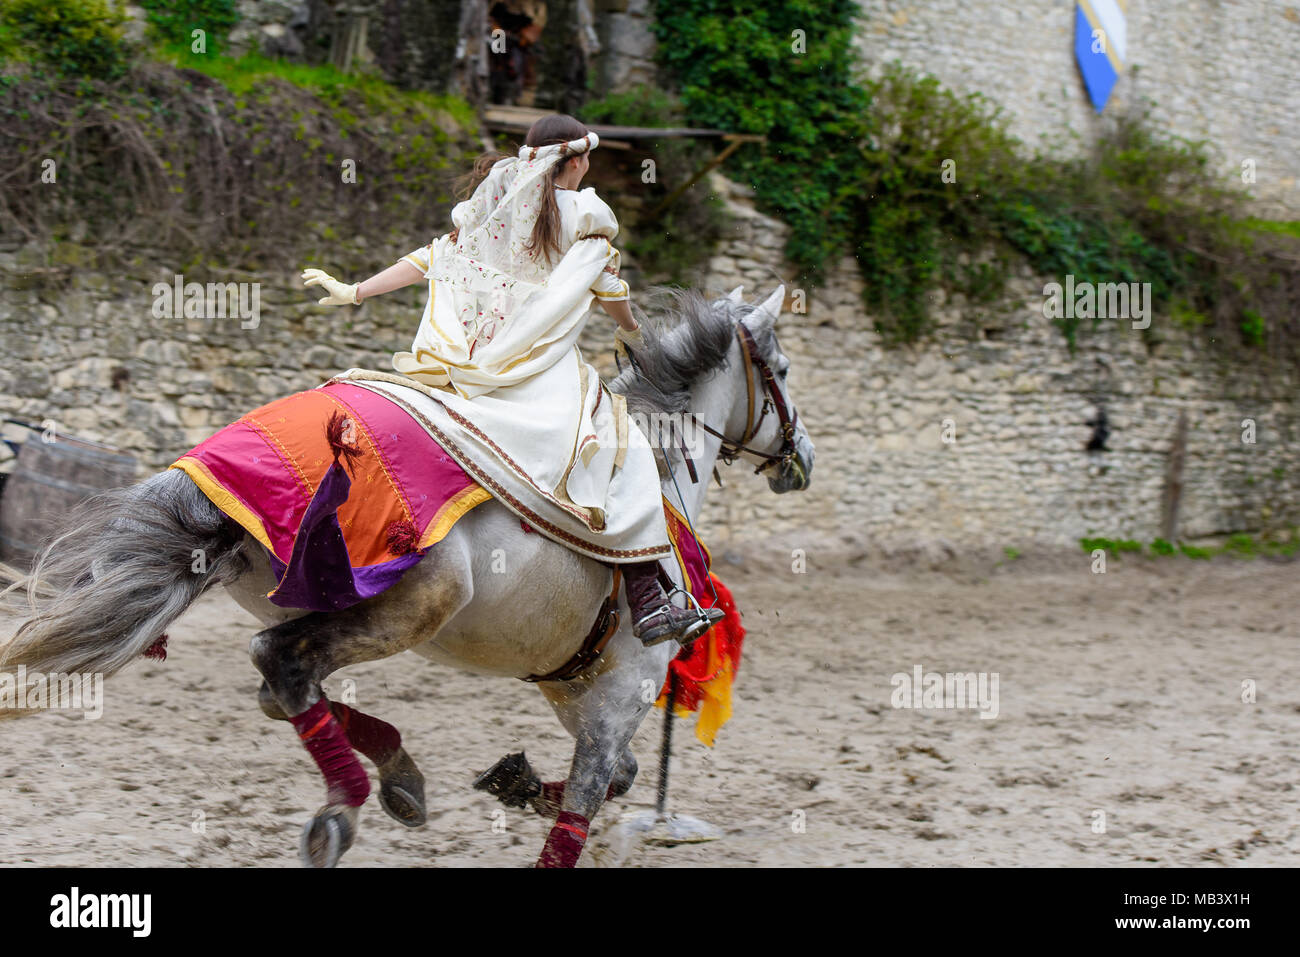 PROVINS, Frankreich - 31. MÄRZ 2018: die Unbekannte schöne Mädchen die Prinzessin geht weg auf einem Pferd während der Schlacht um das Reich im mittelalterlichen Reco Stockfoto